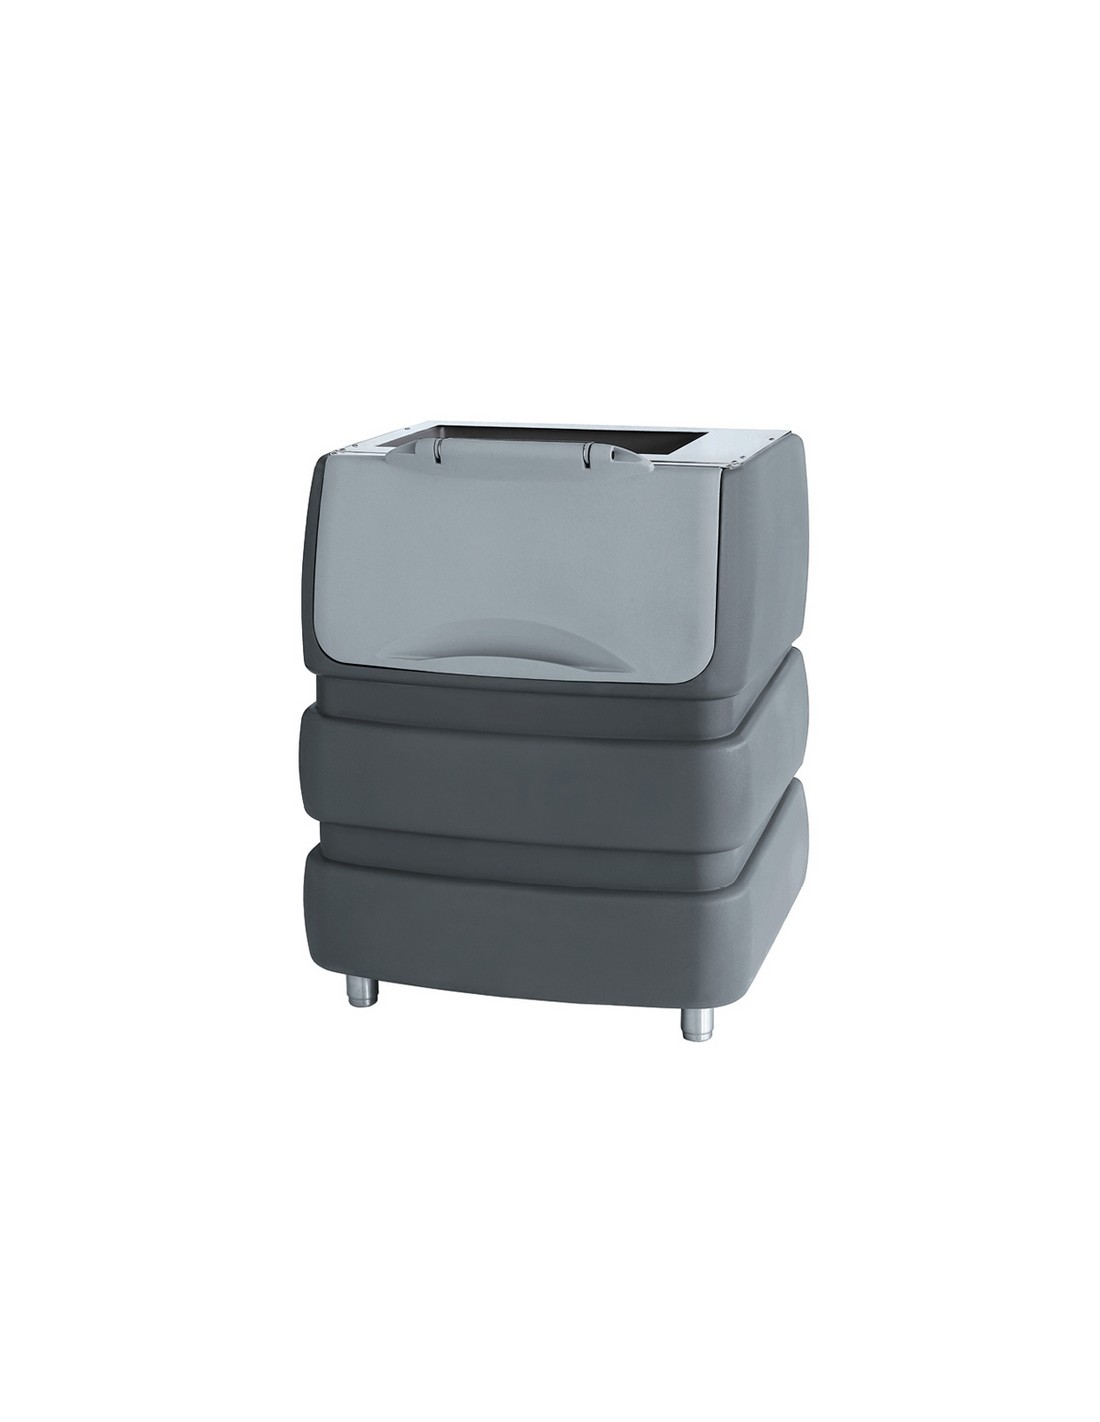 Contenedor de hielo - Capacidad de contenedores kg 190 - cm 94.2 x 79.5 x 105.3 h